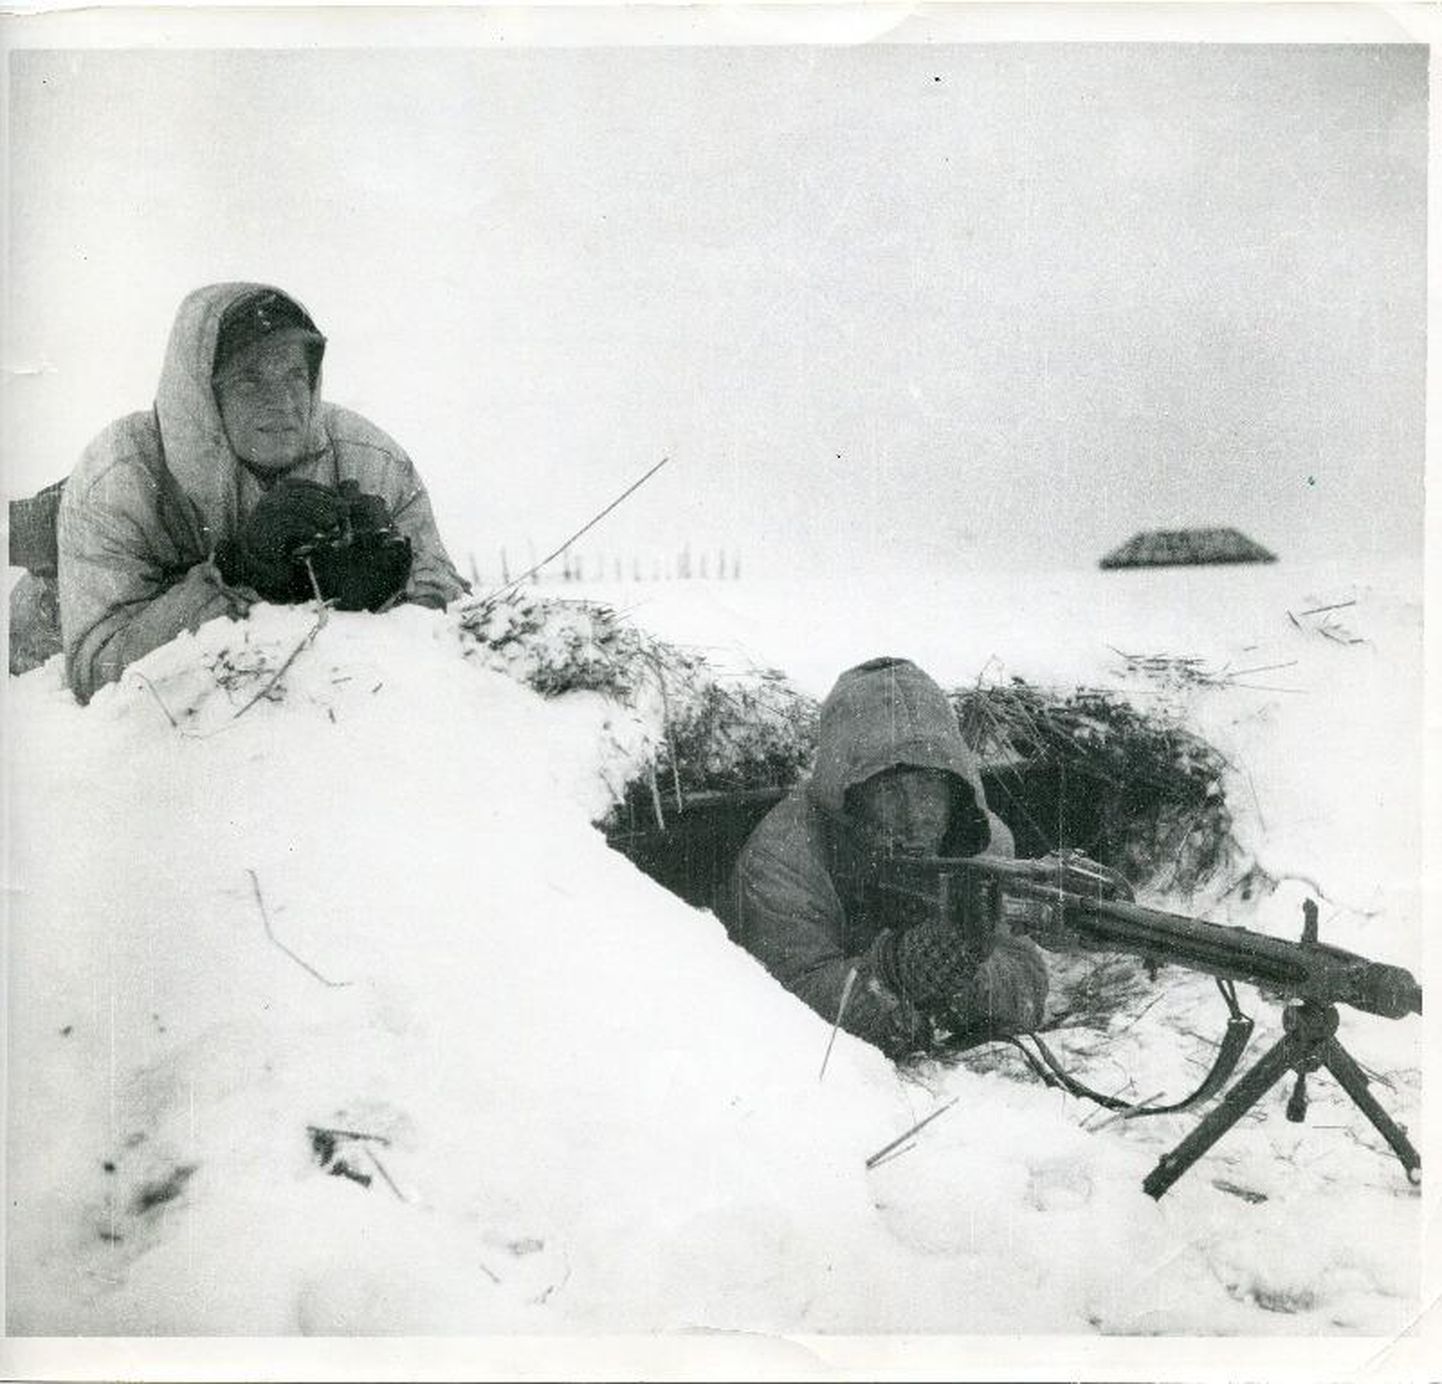 Saksa mundris Eesti mehed üritavad 1944. aasta talvel Krivasoos peatada Punaarmee edasitungi Eestisse.